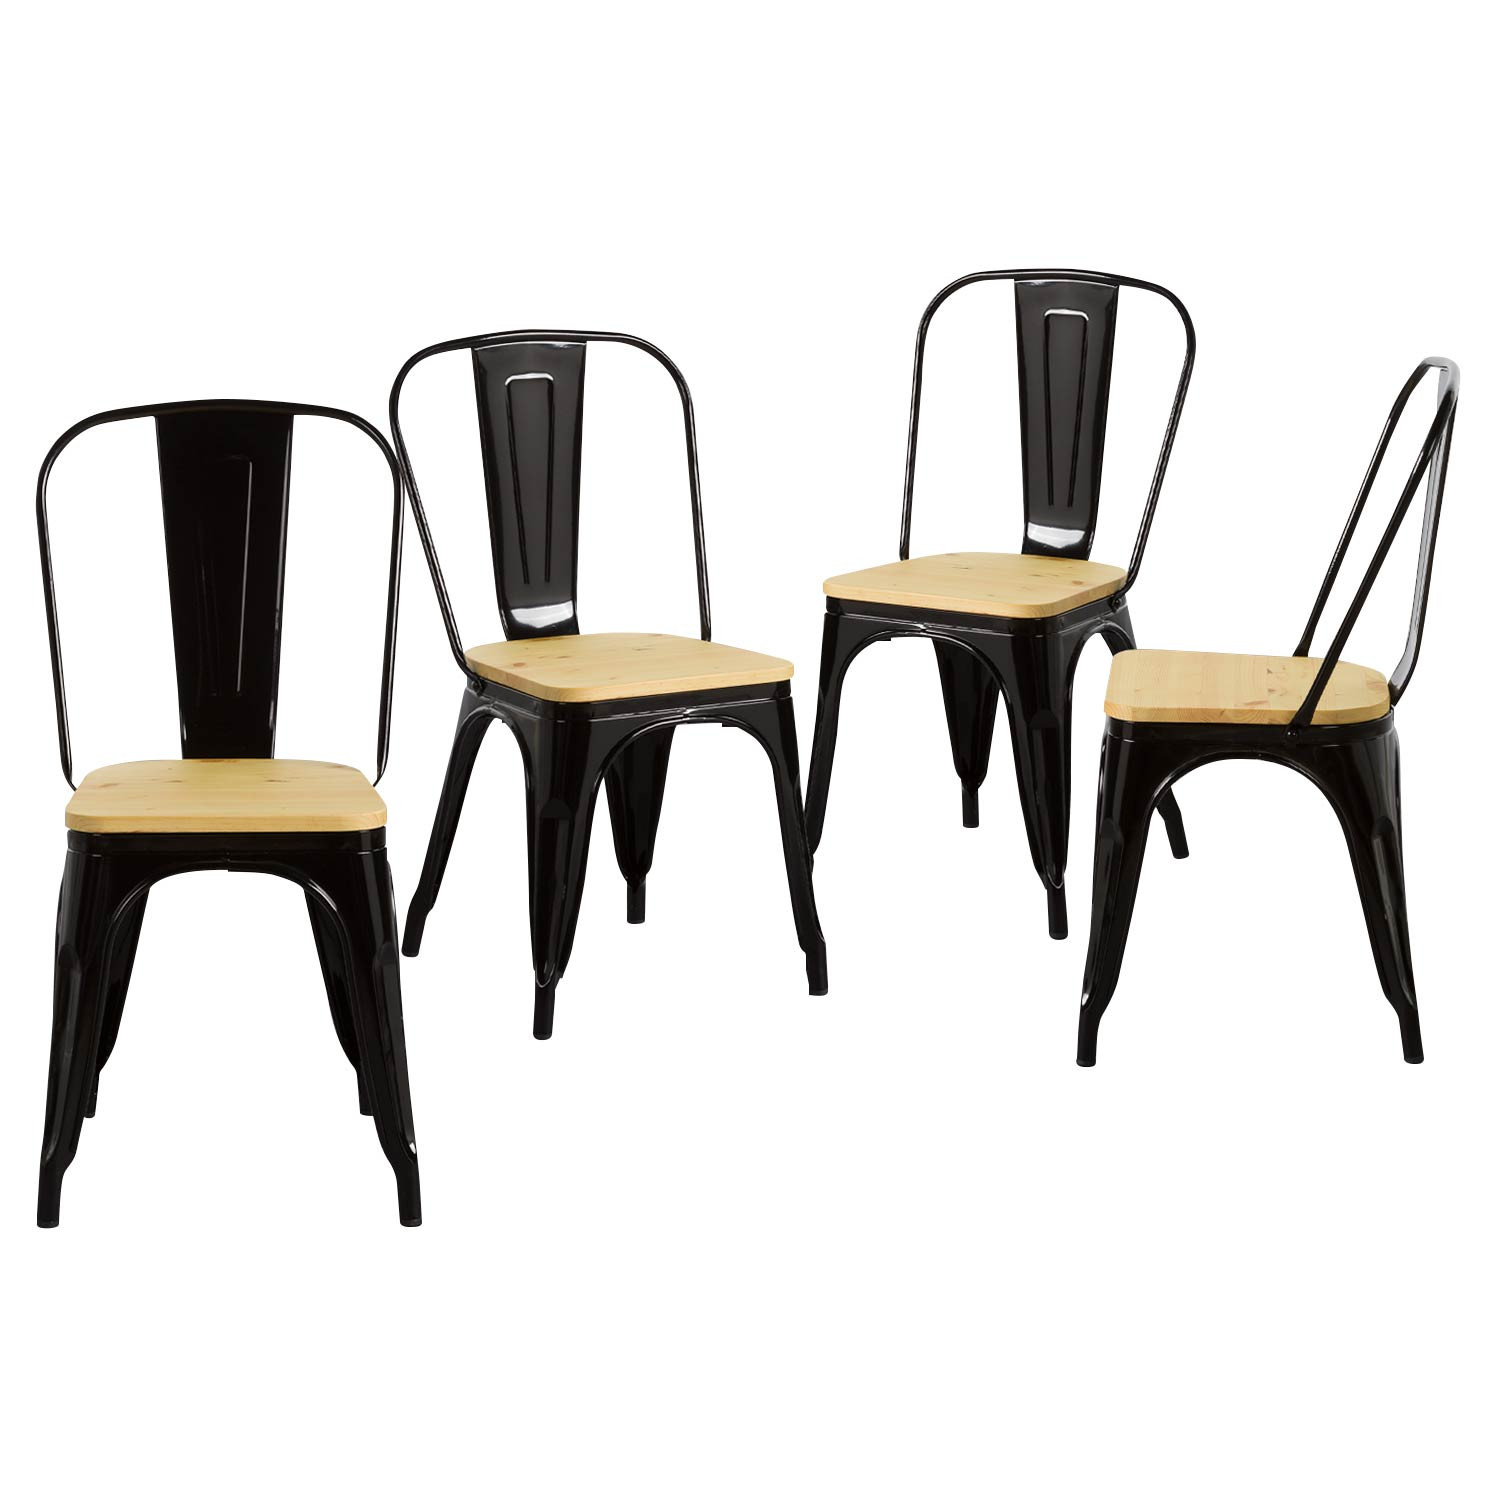 Pack 4 Cadeiras Industriais Fortes com Assento de Madeira 45x54x85cm Thinia Home Packs de Cadeiras 1